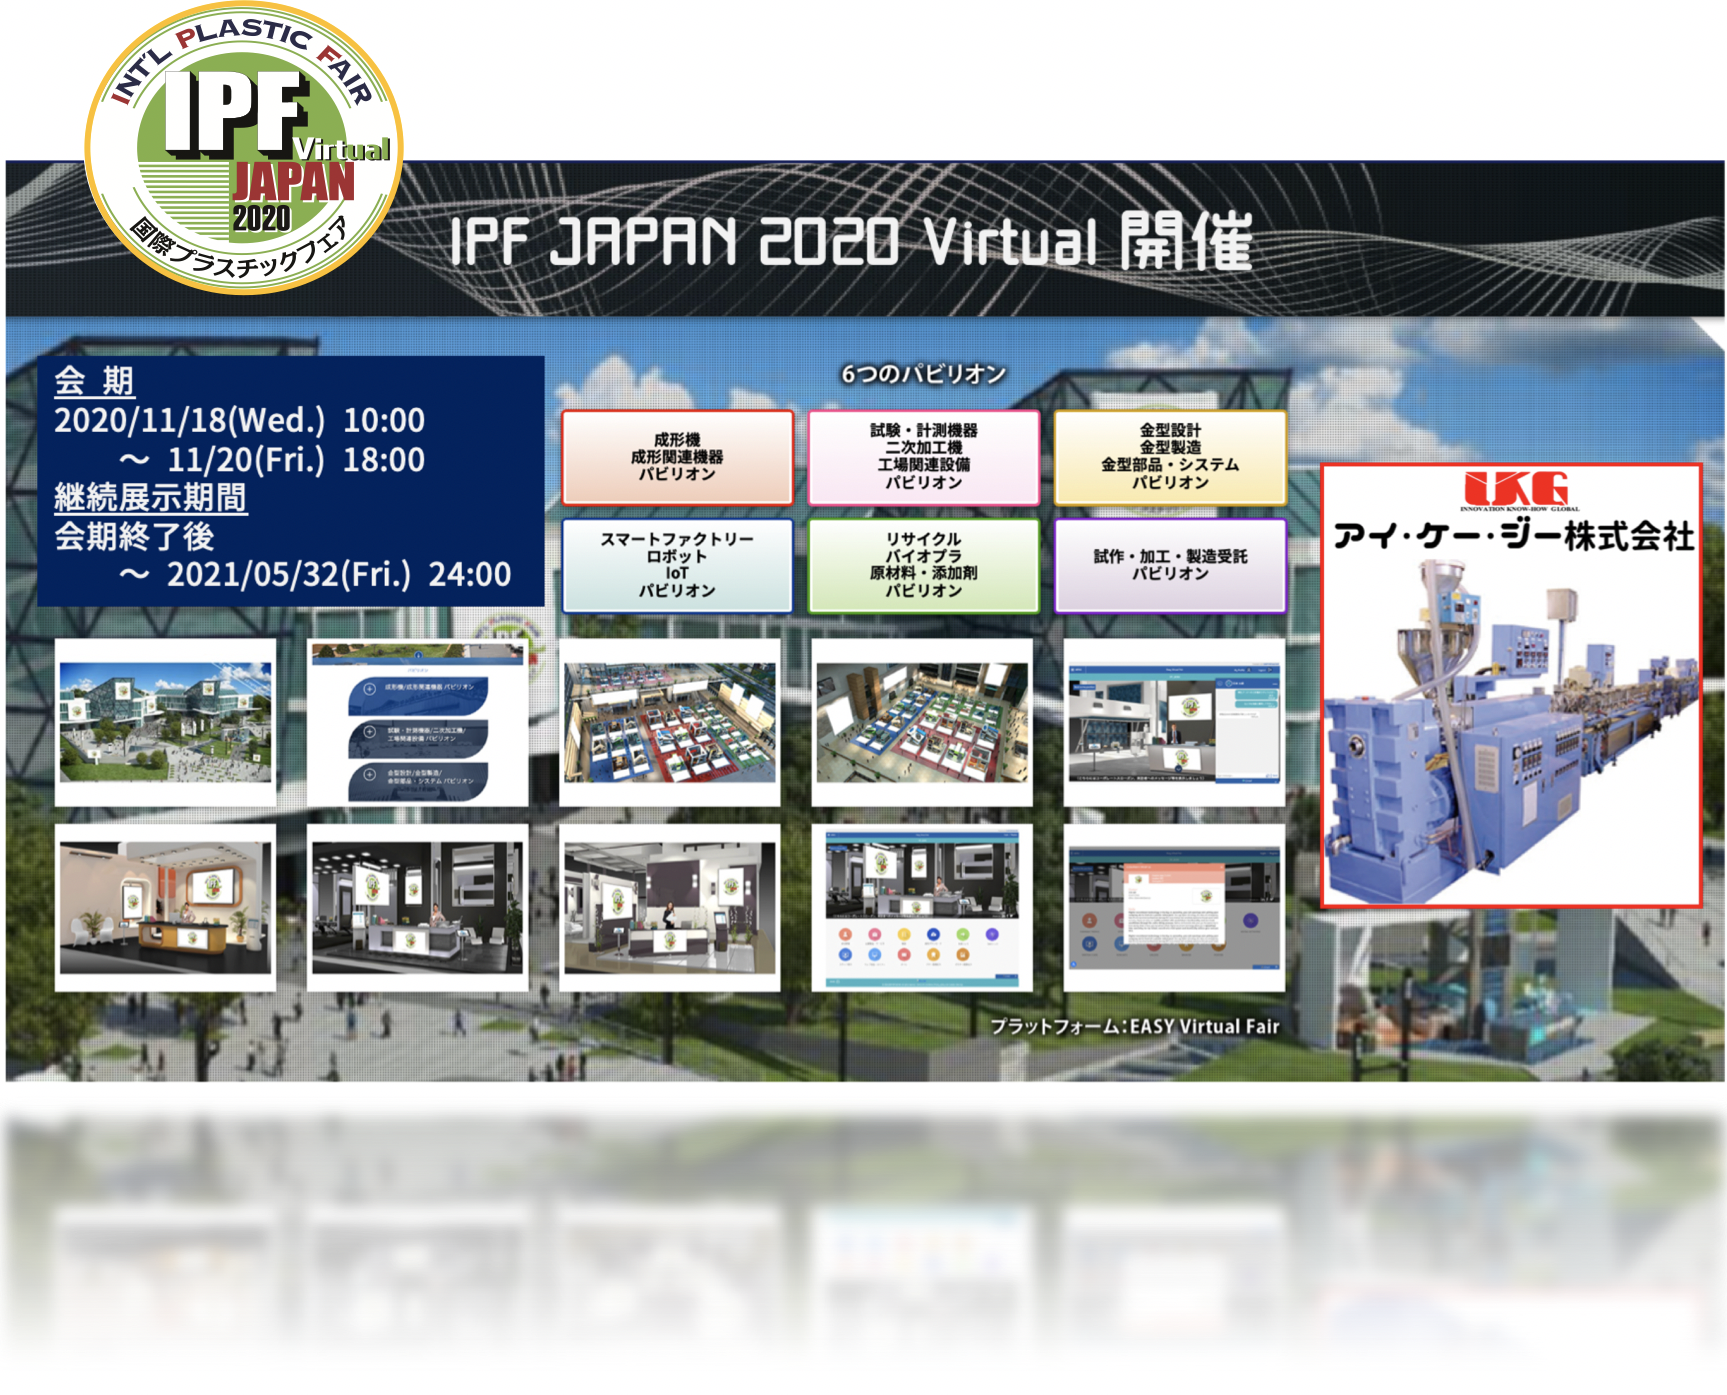 2020/09/17  国際プラスチックフェア『IPF JAPAN 2020 Virtual』出展のお知らせ